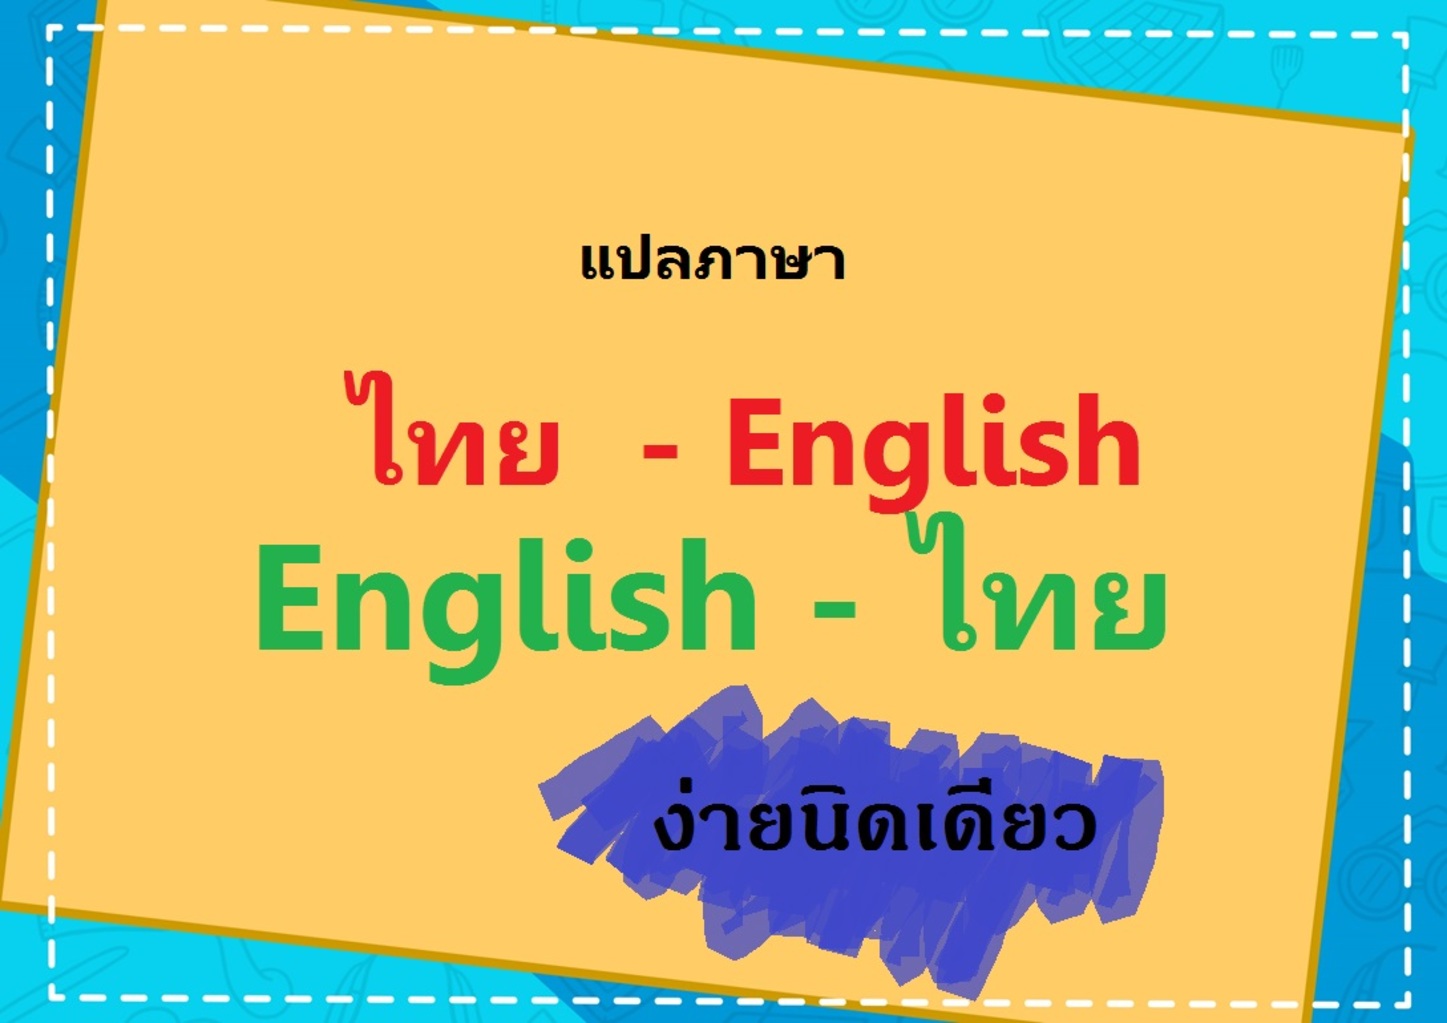 แปลภาษา ไทย-อังกฤษ ง่ายนิดเดียว! | Trueid Creator